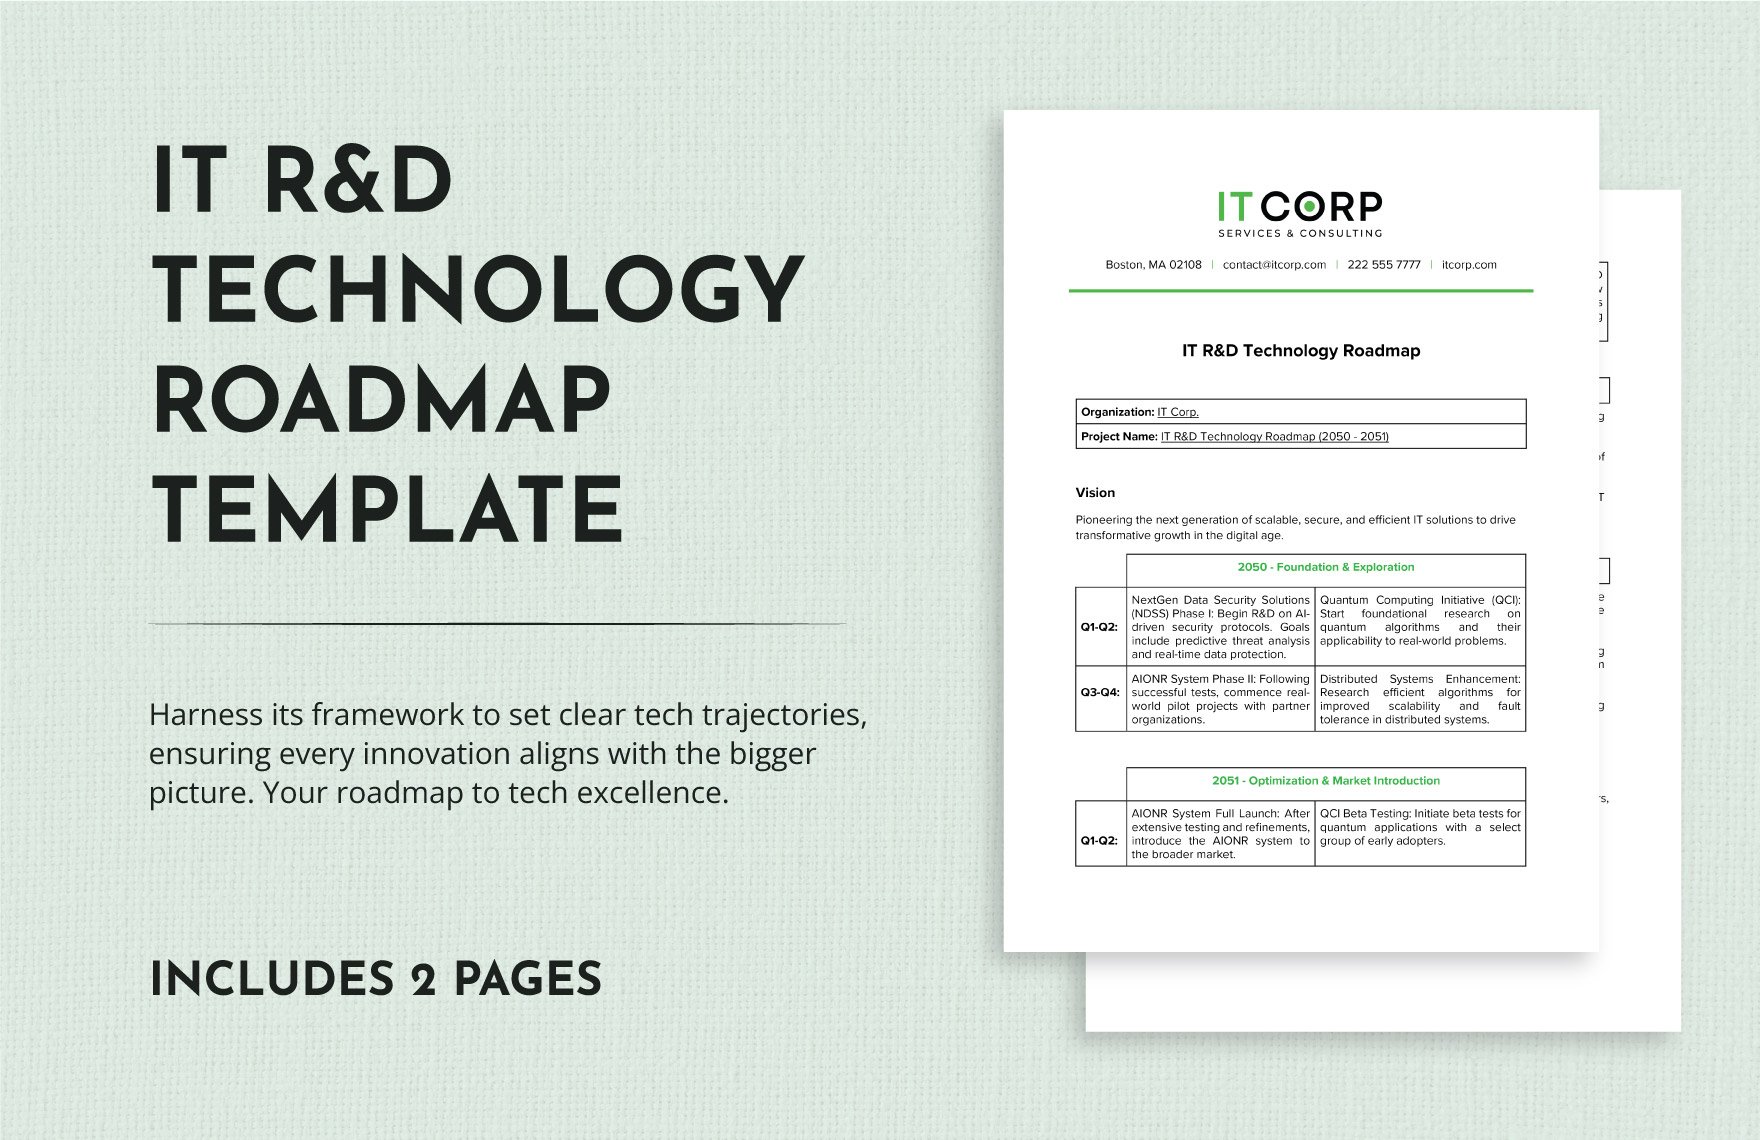 IT R&D Technology Roadmap Template in Word, Google Docs, PDF